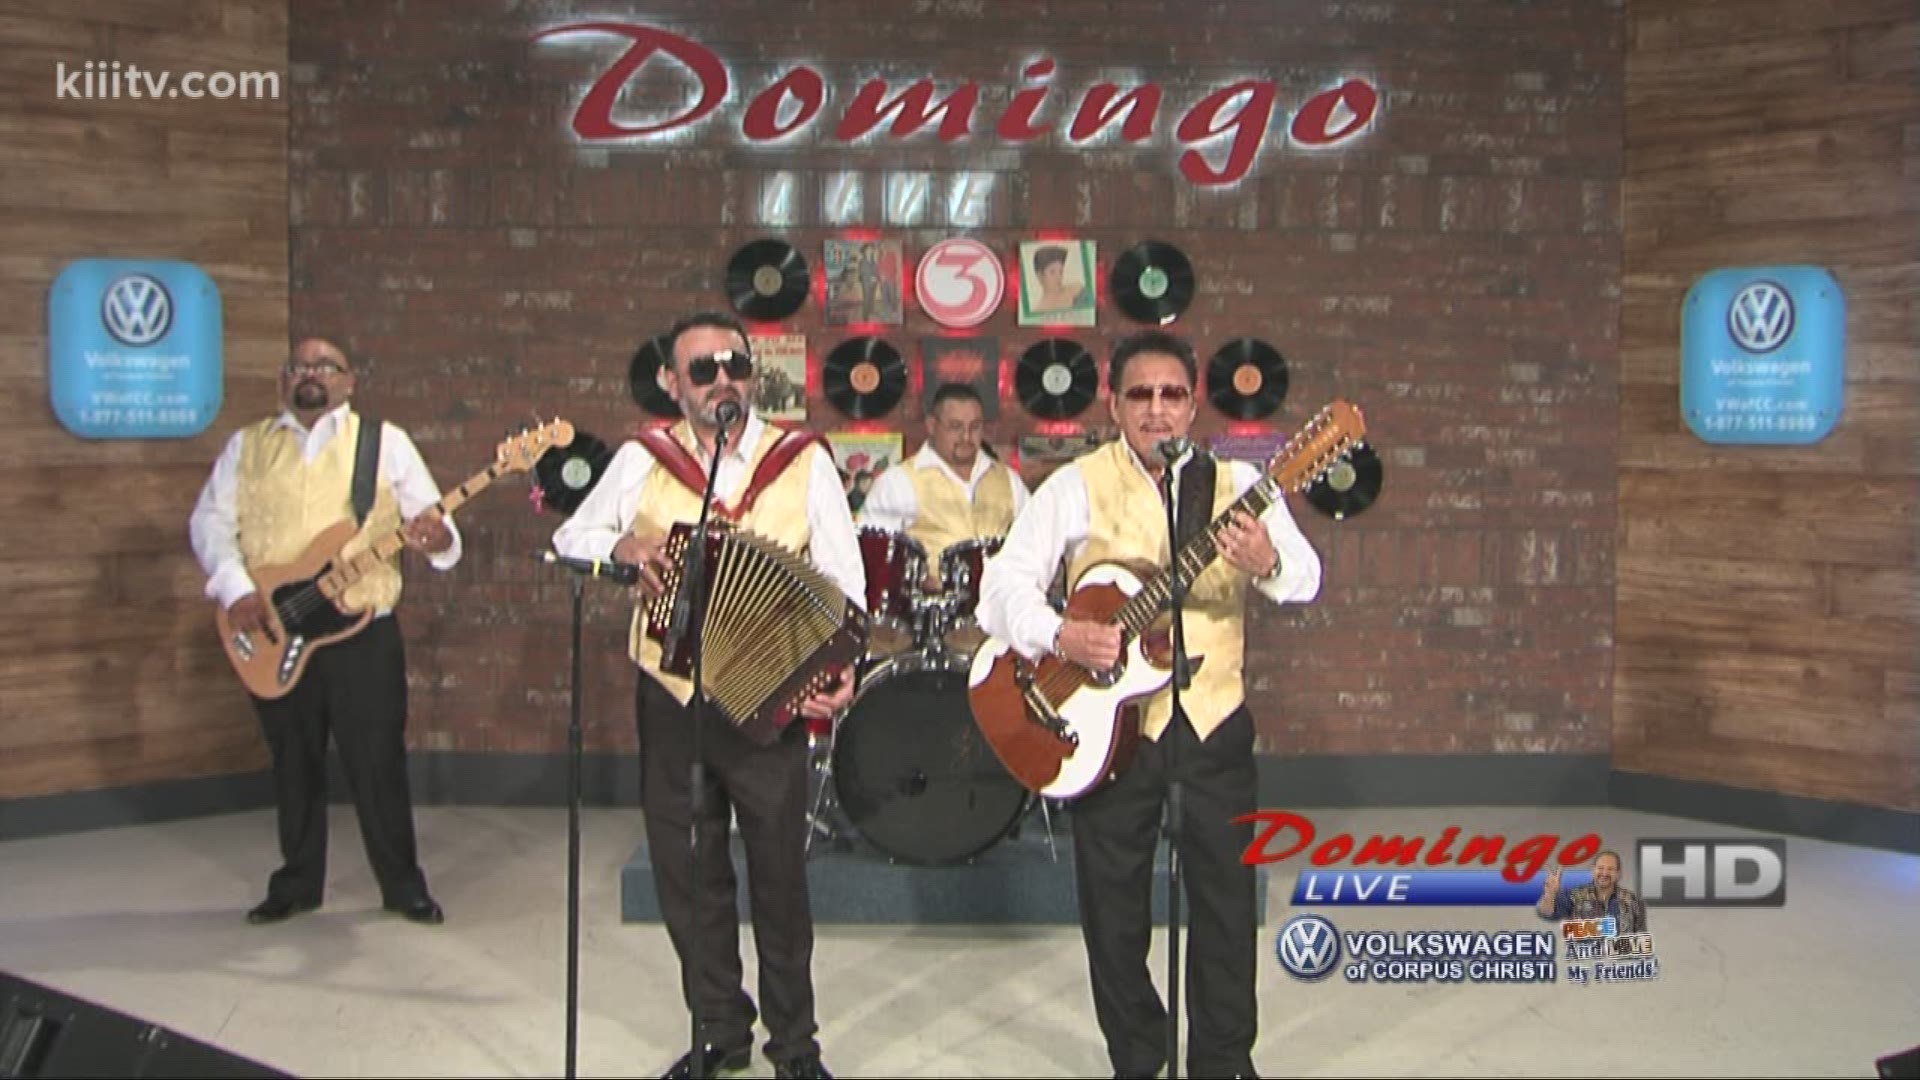 Los 2G's performing "Como Una Cualquiera" on Domingo Live.